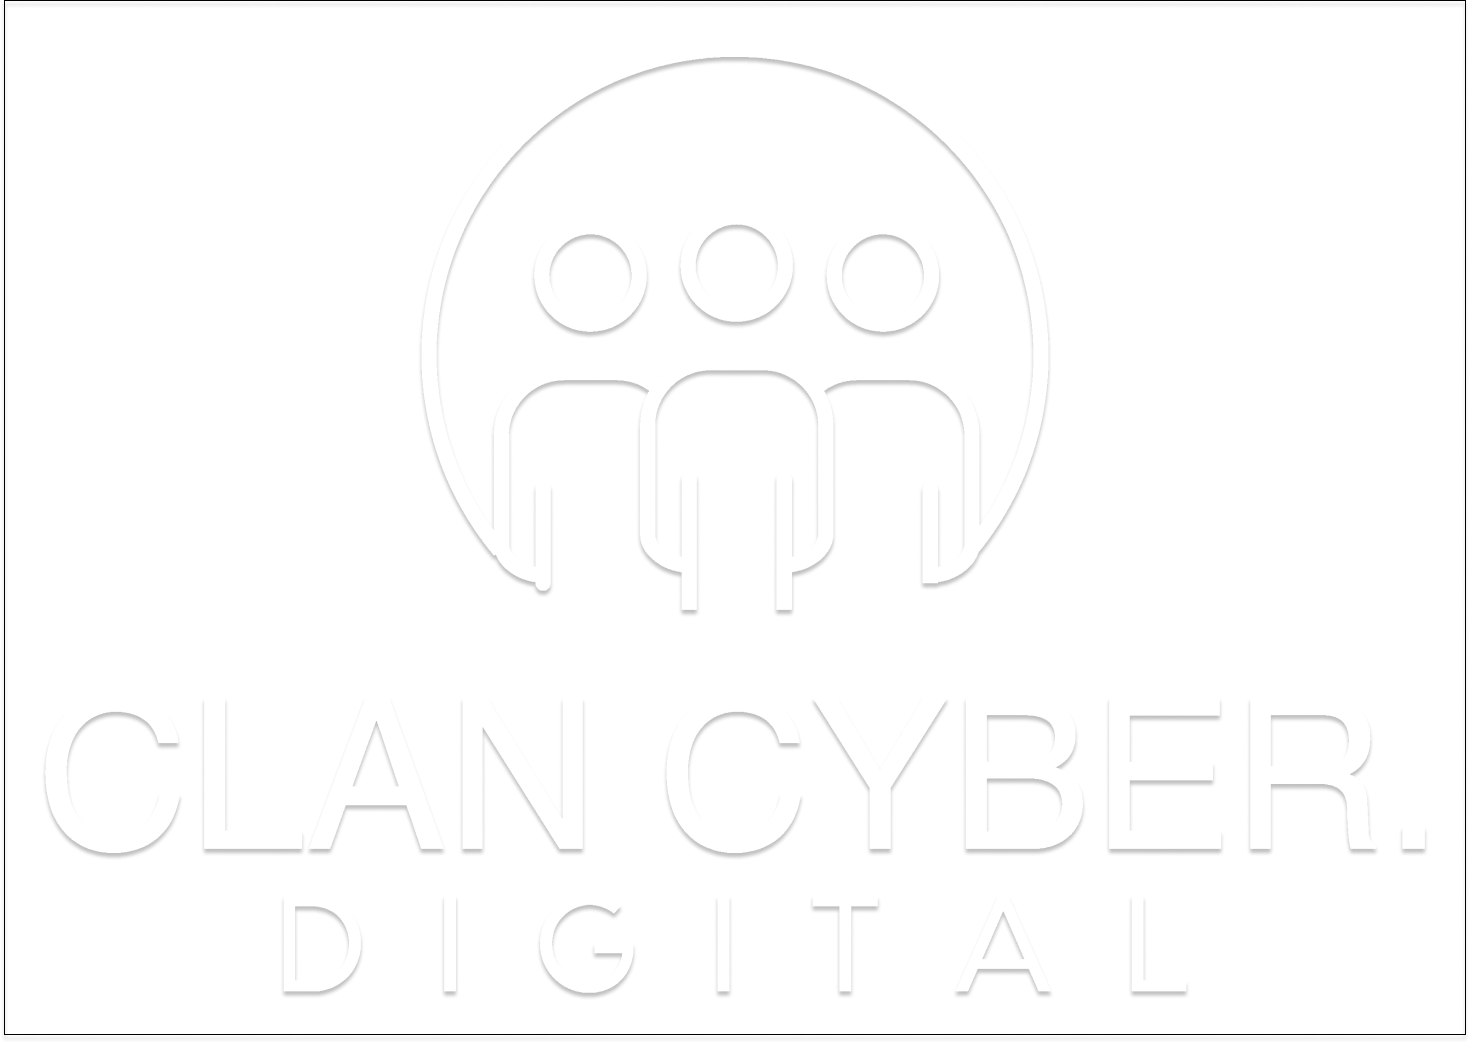 Clan Cyber Digital